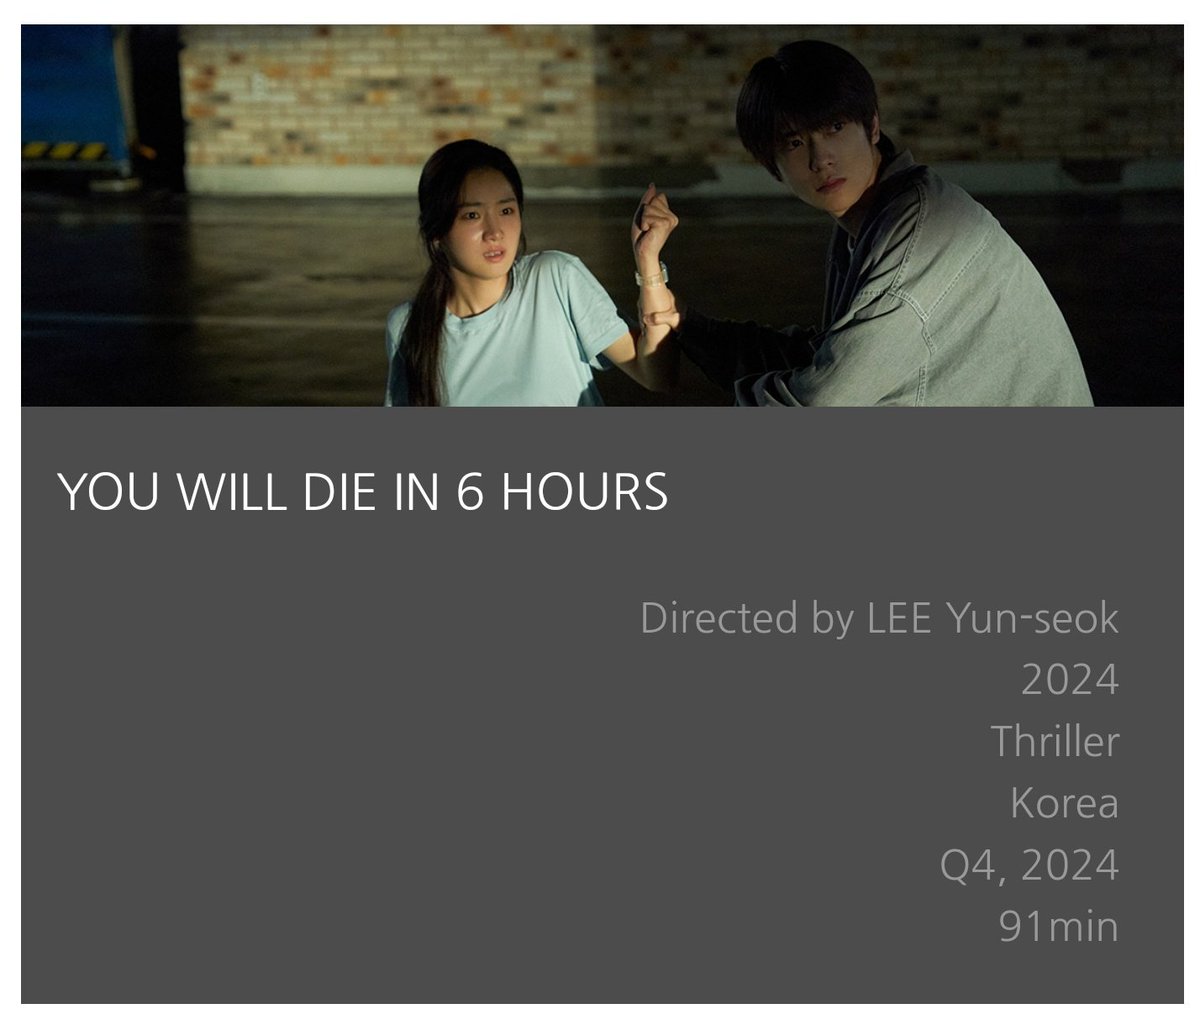 6시간 후 너는 죽는다 (You Will Die In 6 Hours) starring #JAEHYUN will be released on the 4th Quarter of 2024 with 91 mins running time. #재현 #NCT재현 #ジェヒョン #6시간후너는죽는다 #YouWillDieInSixHours